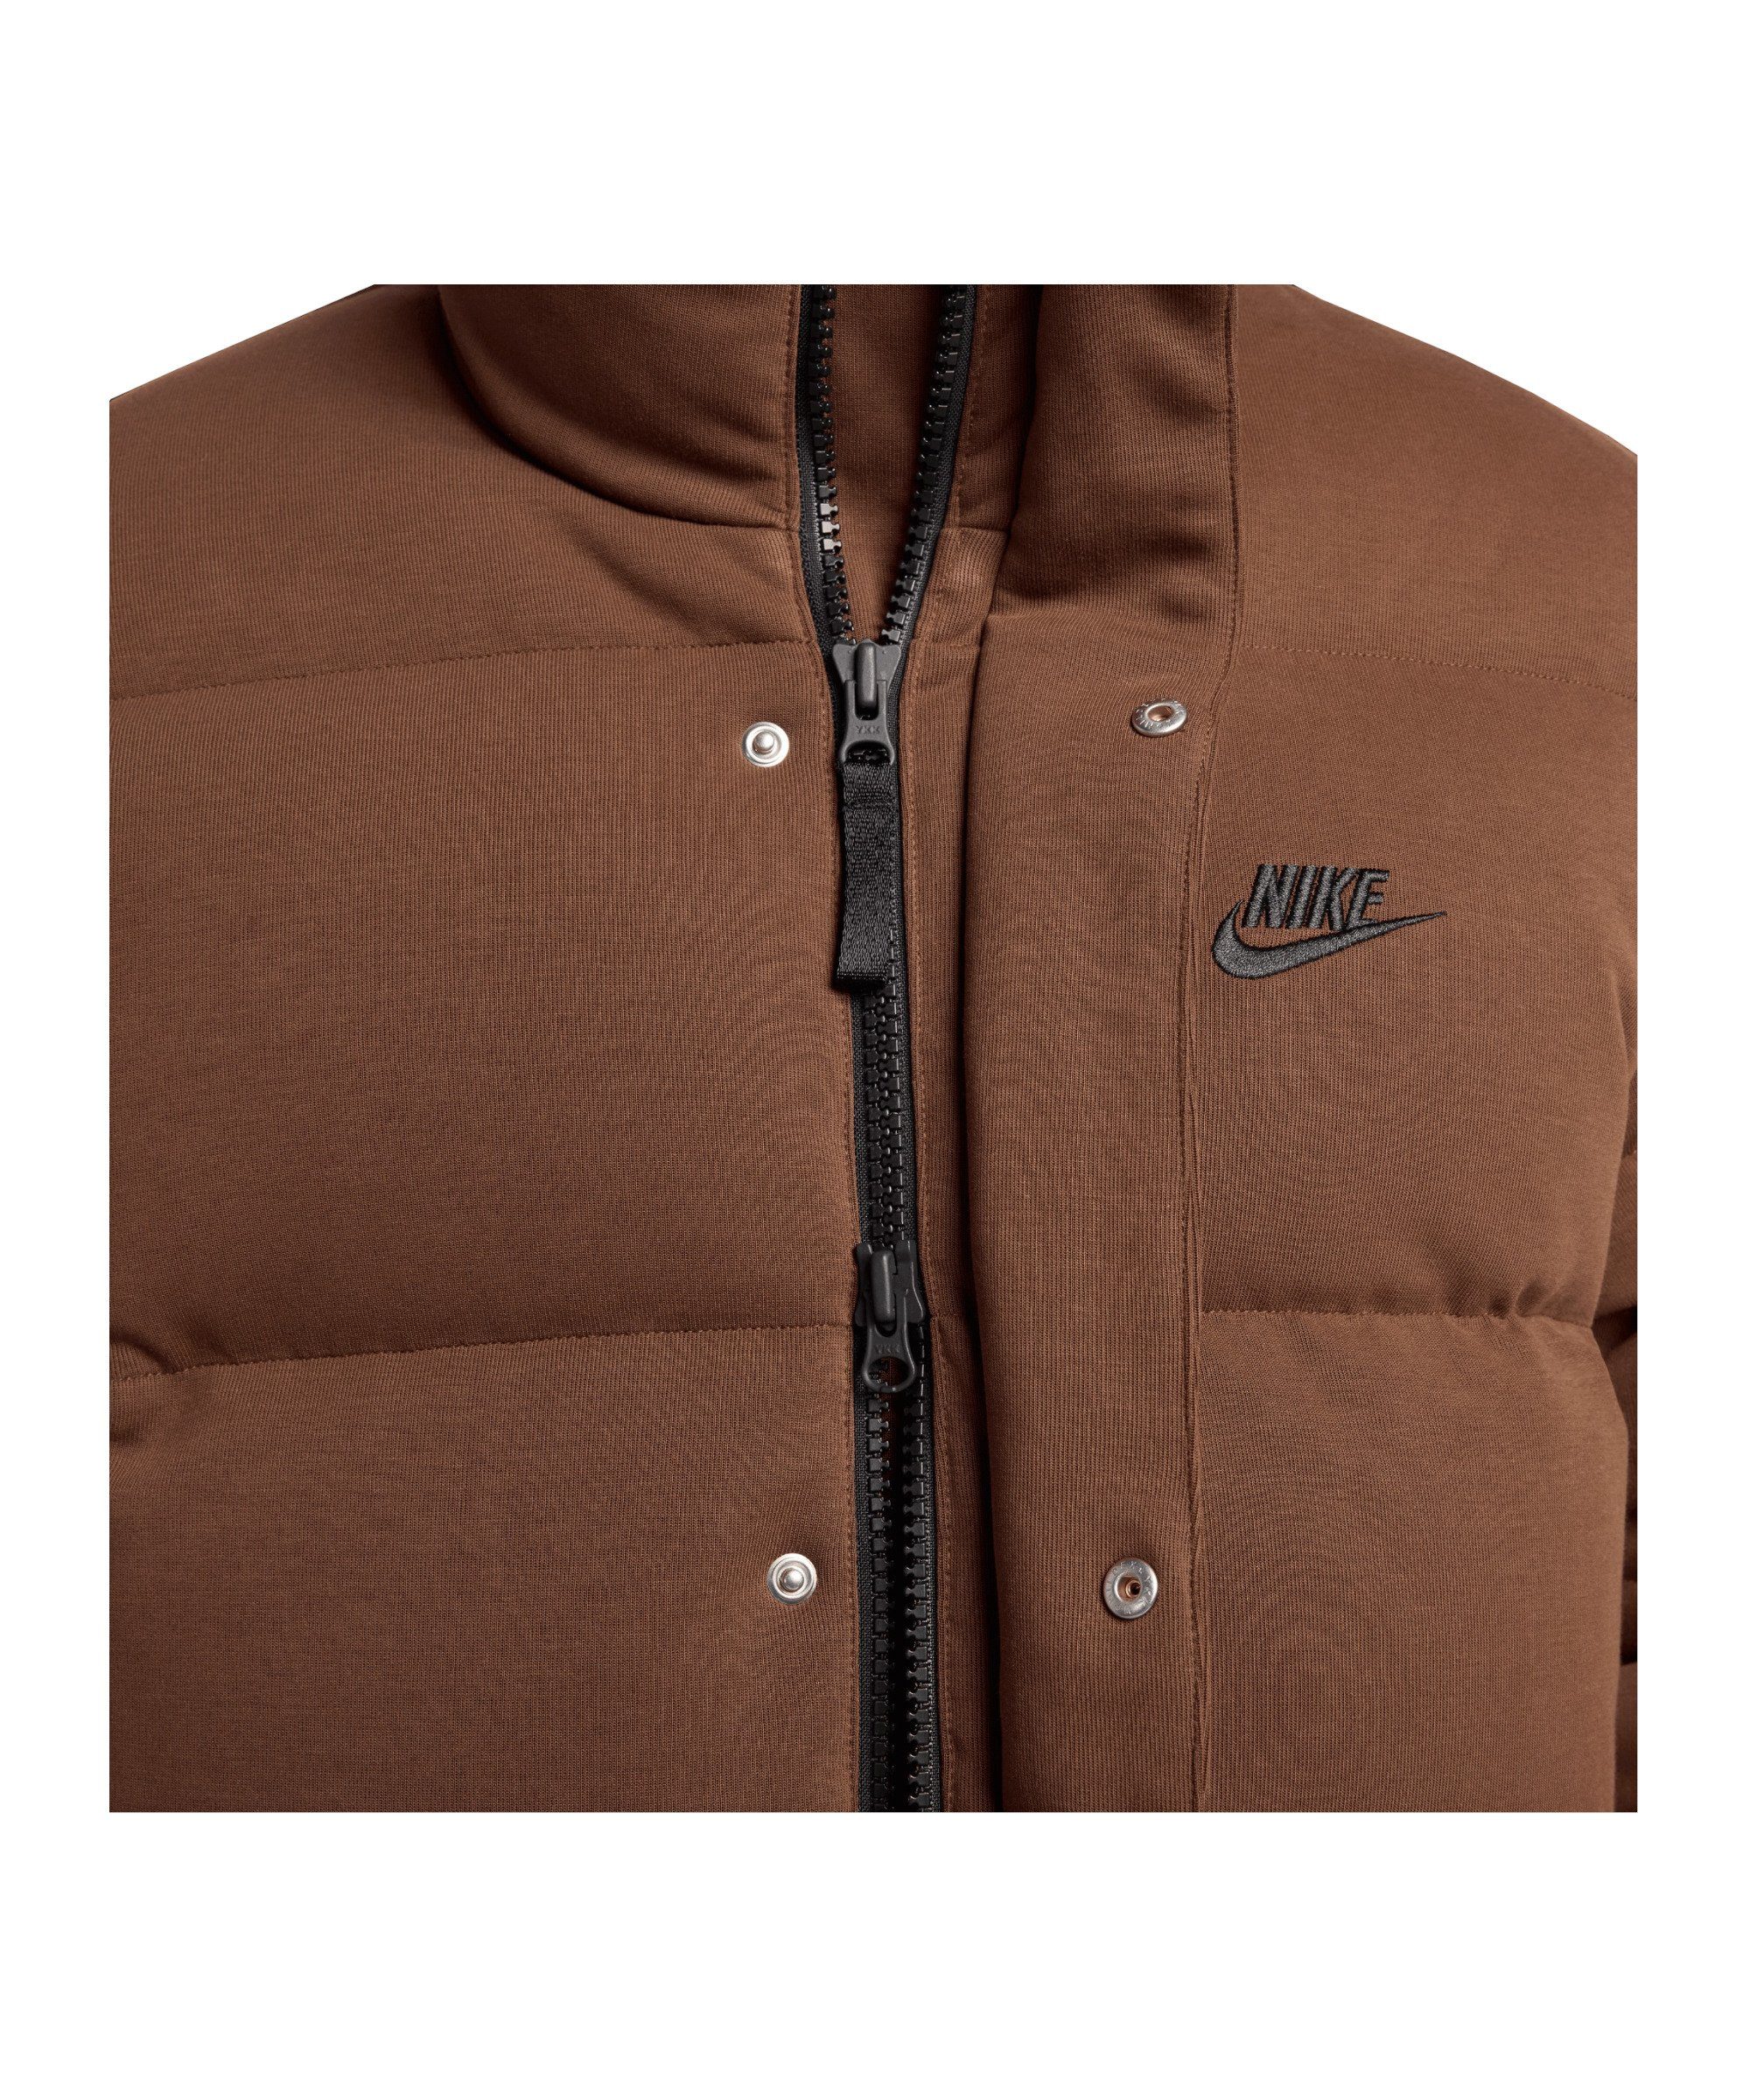 Nike Sportswear Tech braunschwarz Sweatjacke Jacke Fleece